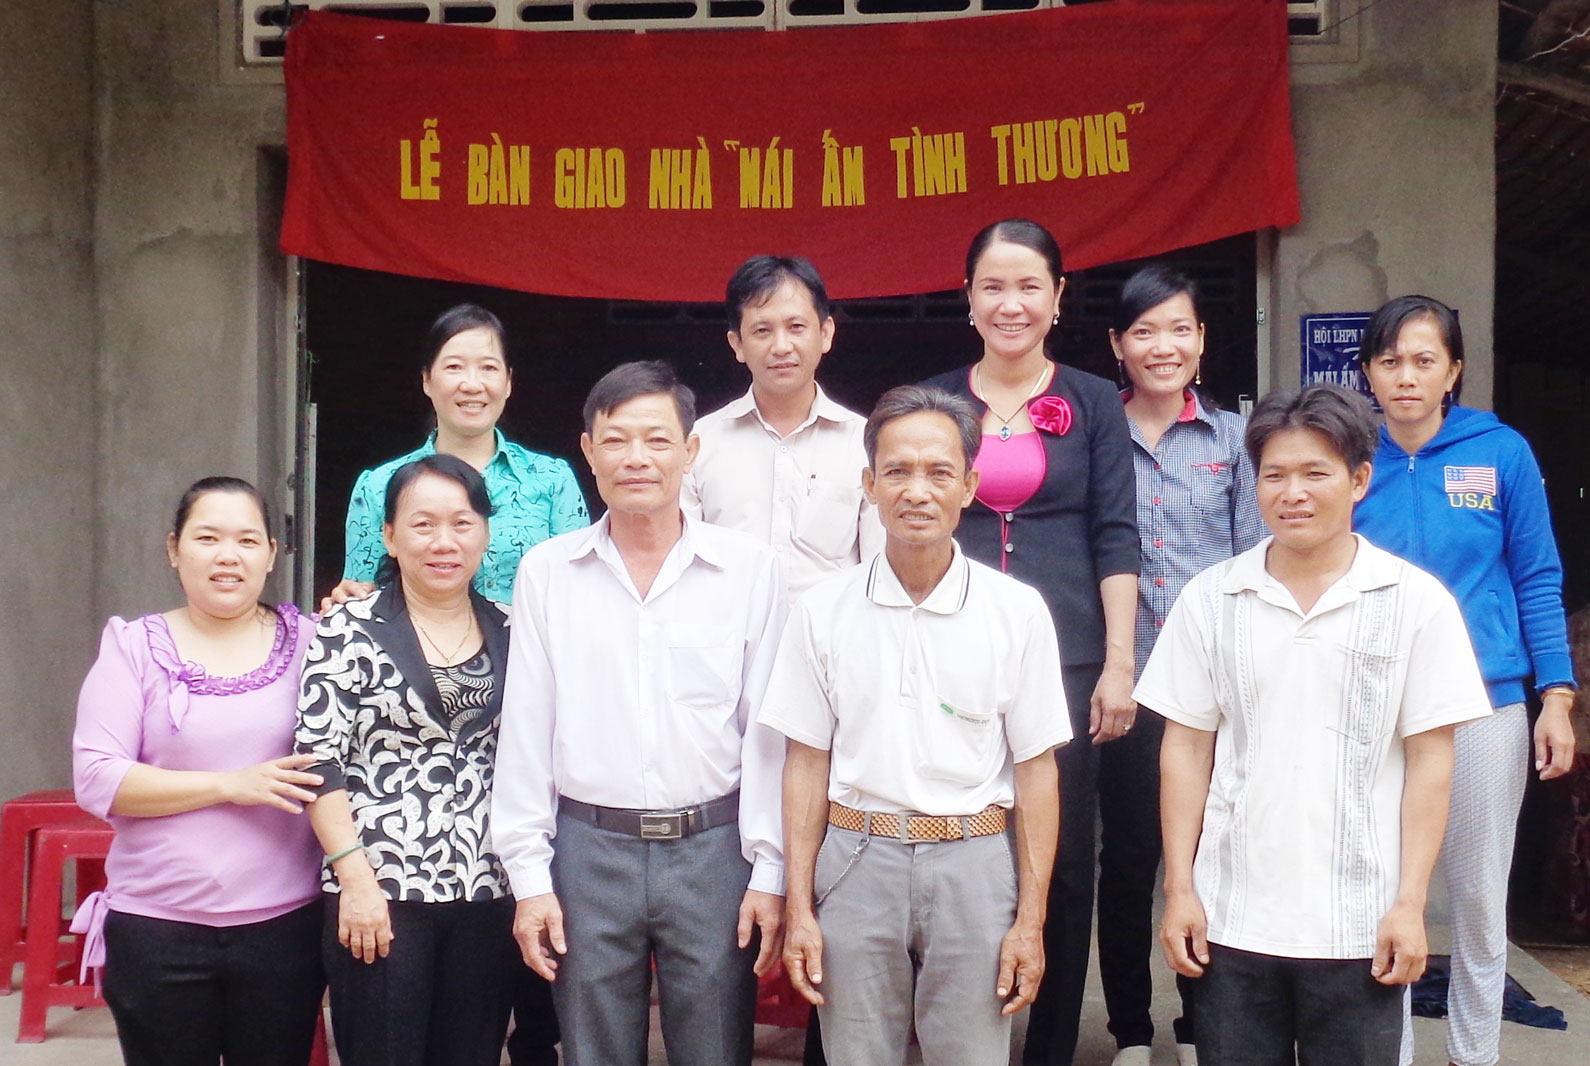 Bà Phan Thị Bích Ly (thứ 2, trái qua) trong một lần trao nhà tình thương